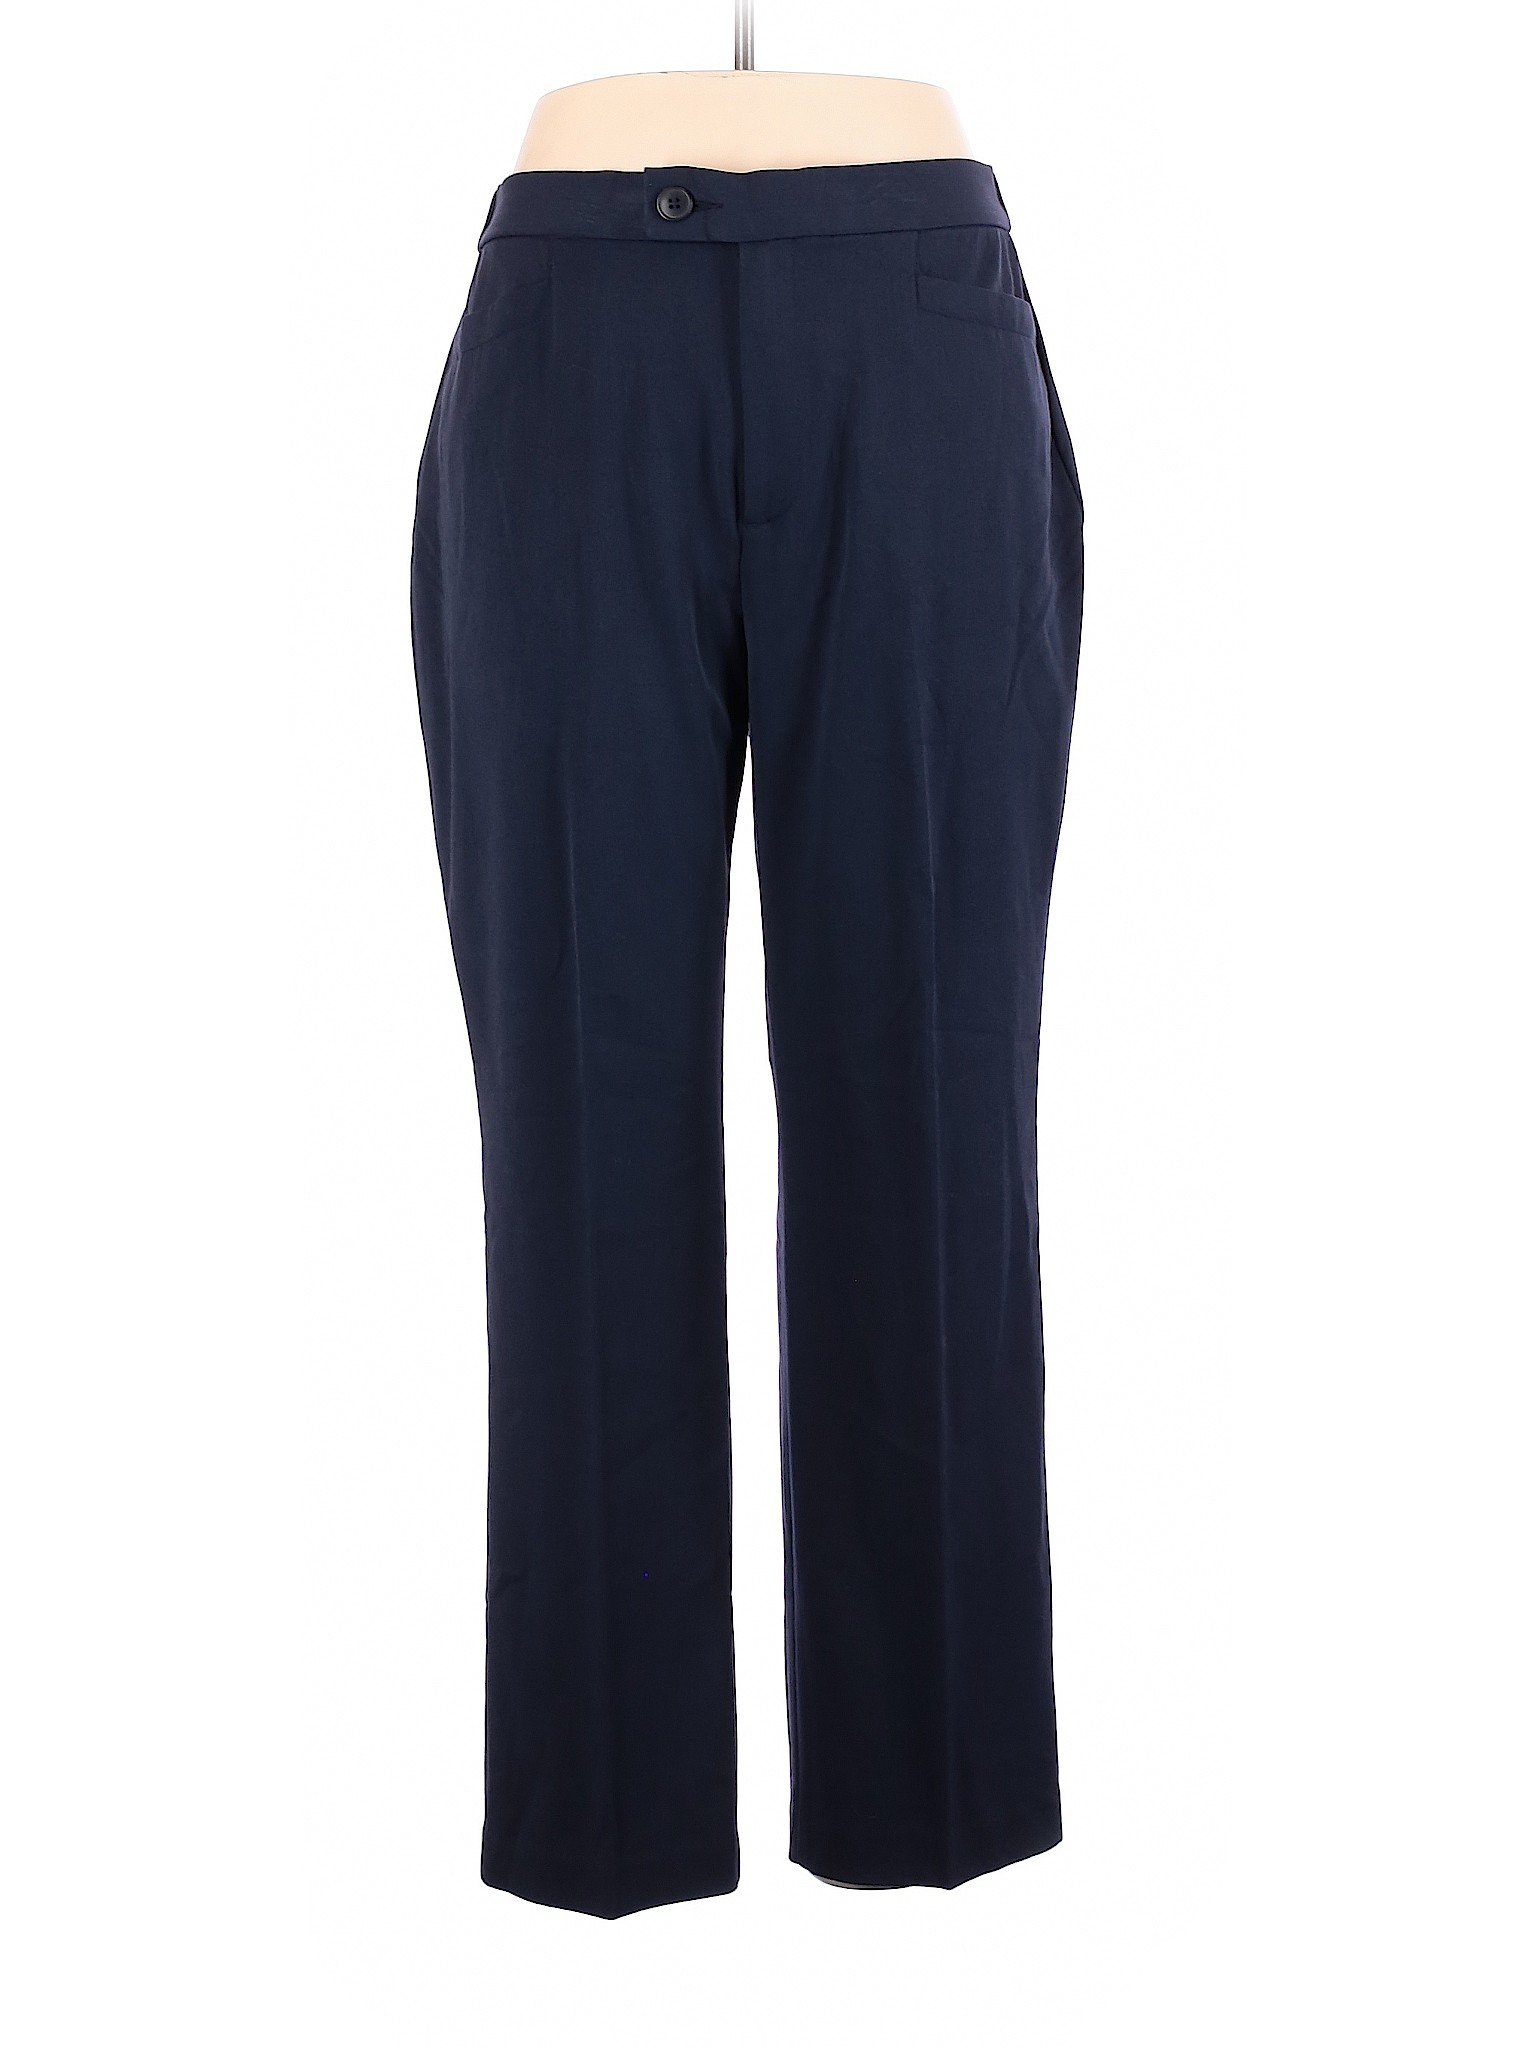 Christopher & Banks Solid Blue Dress Pants Size 14 - 86% off | thredUP